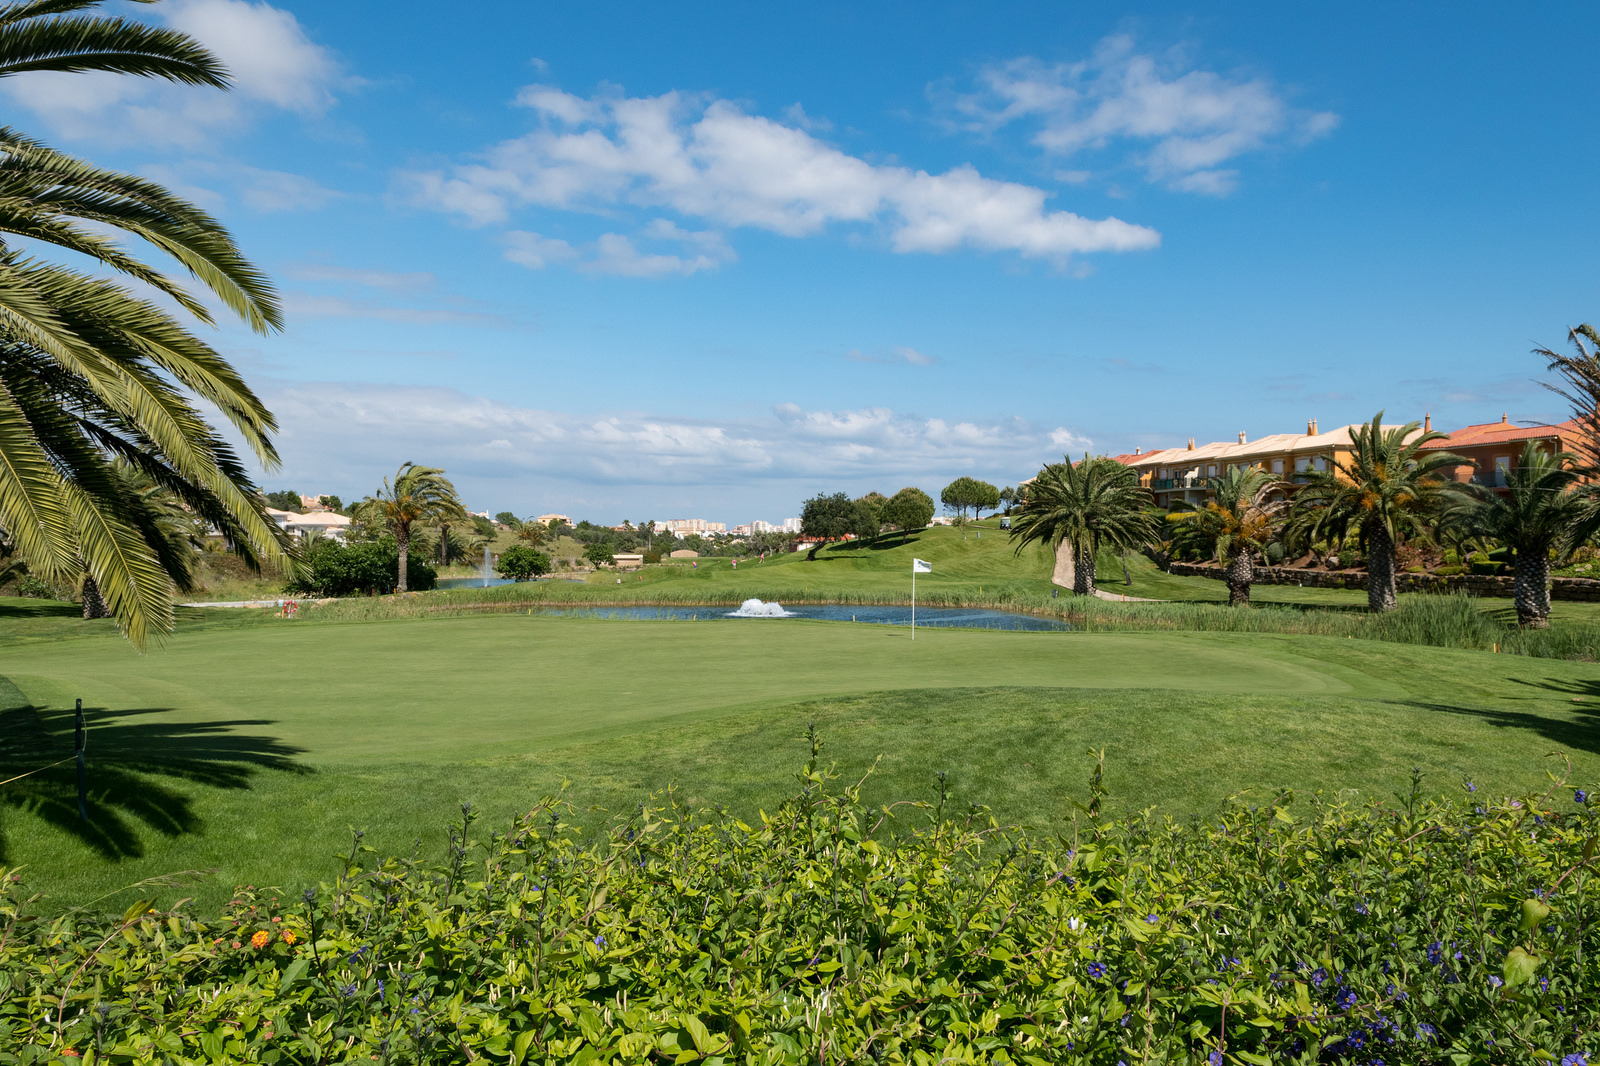 Le tarif des golfs d’Algarve et des licences